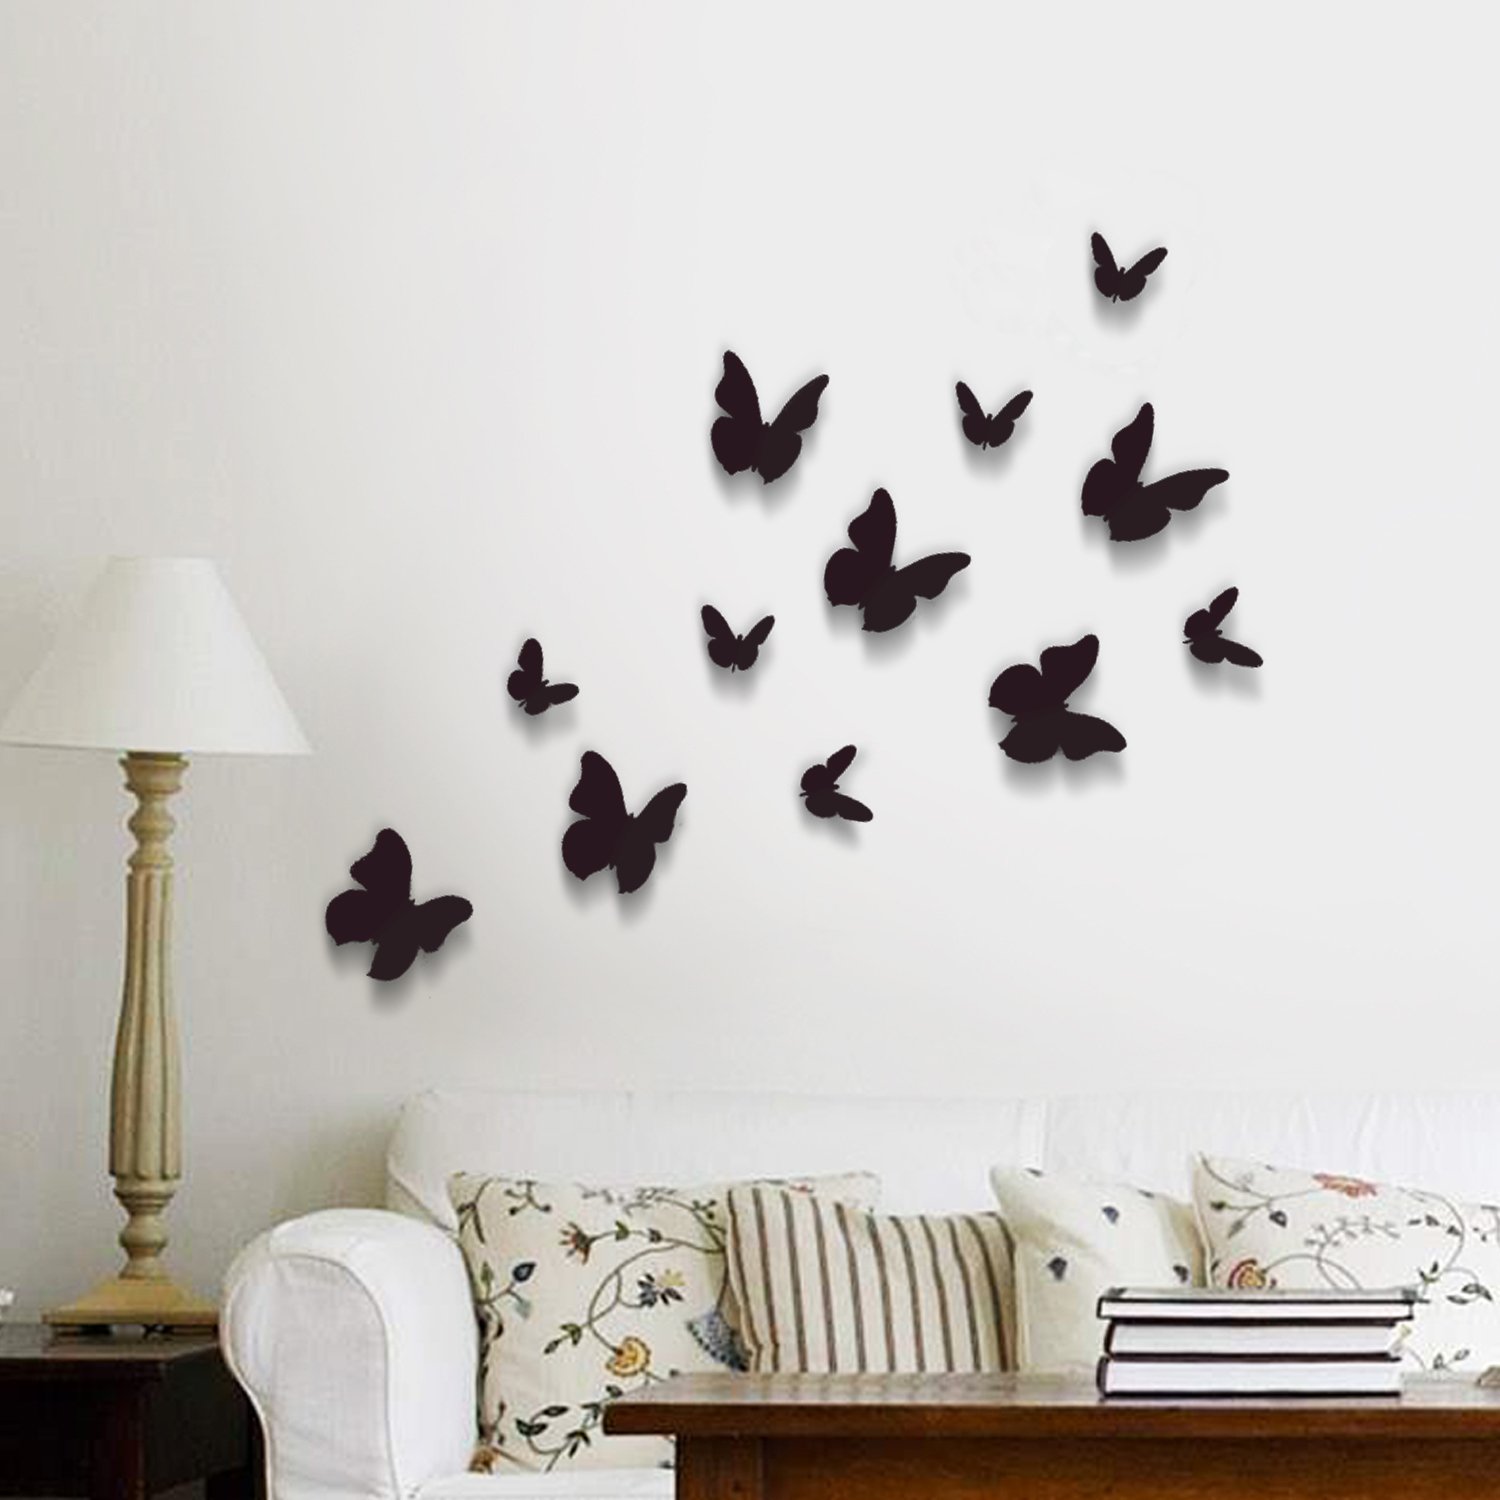 Бабочки клеит. Бабочки на стену. Бабочки декоративные на стену. Композиция из бабочек на стене. Декор из бабочек на стену.